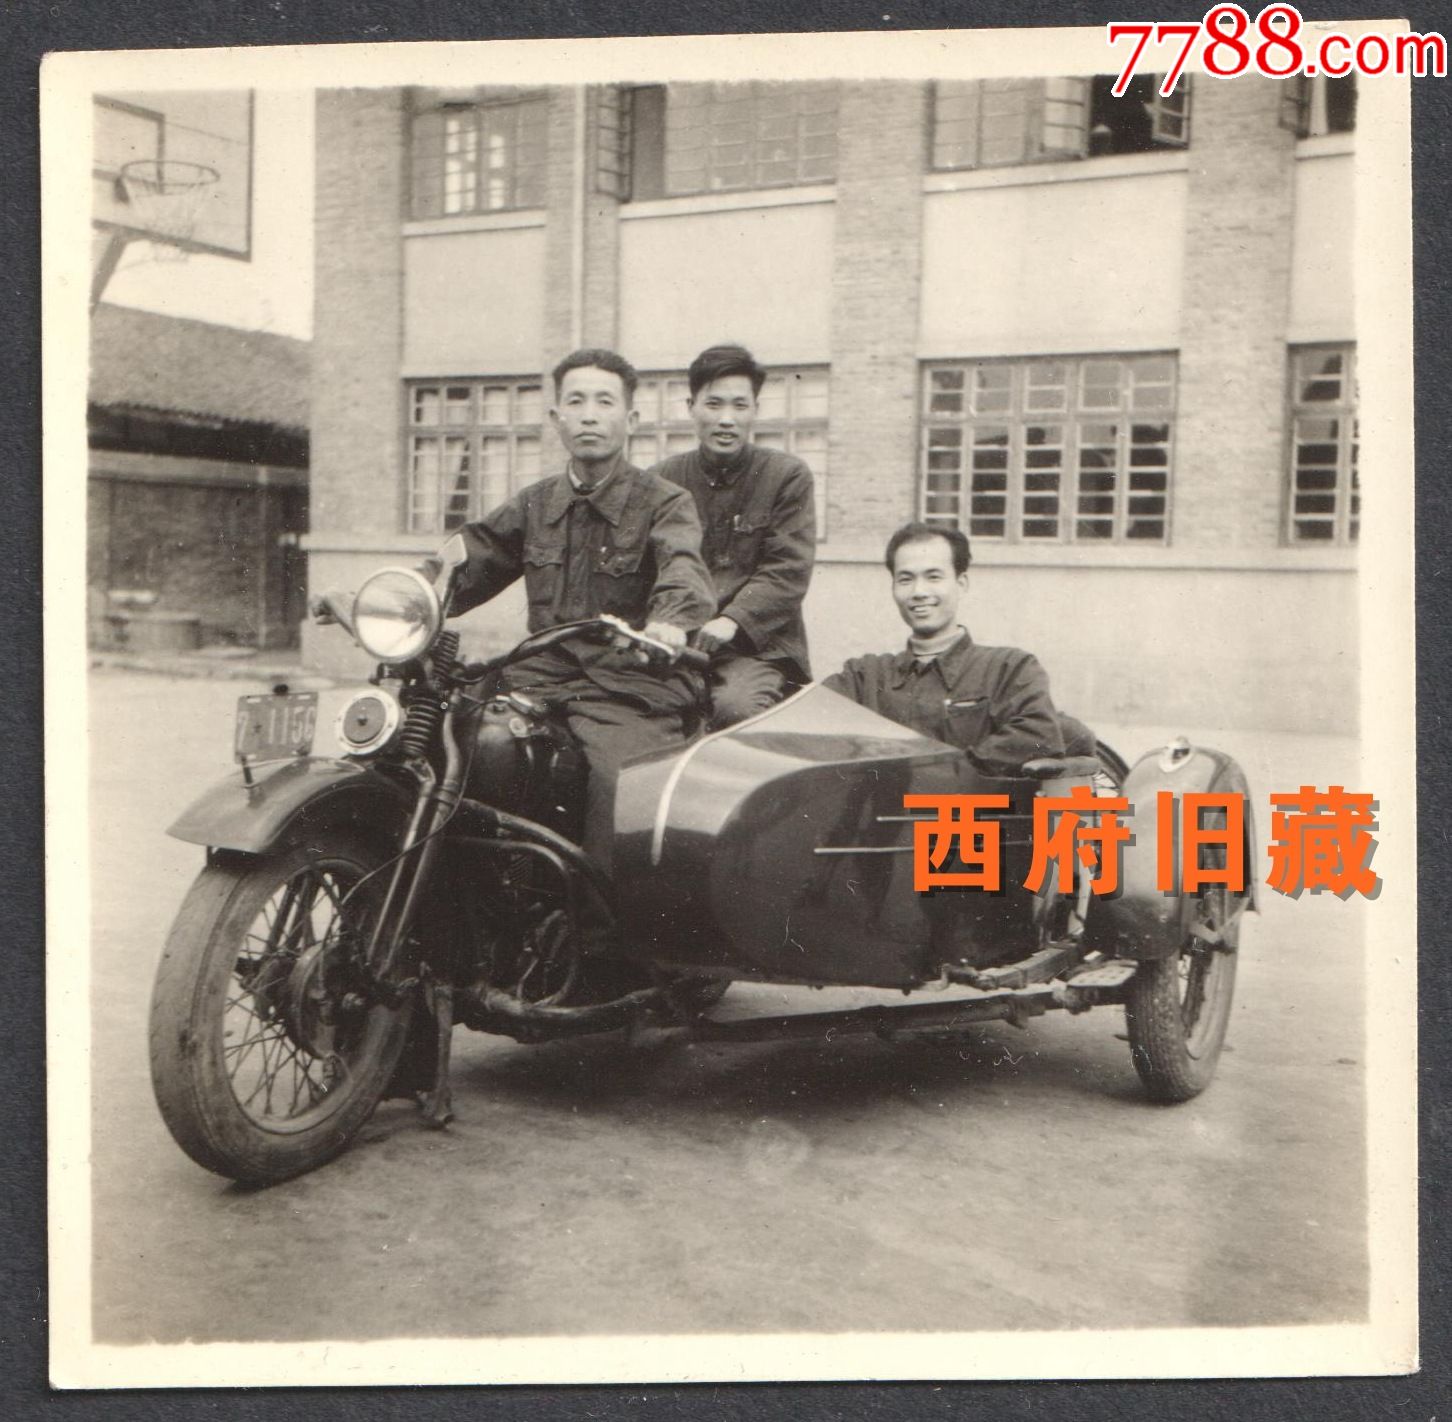 五六十年代,在以来锃亮的老式摩托车的合影老照片